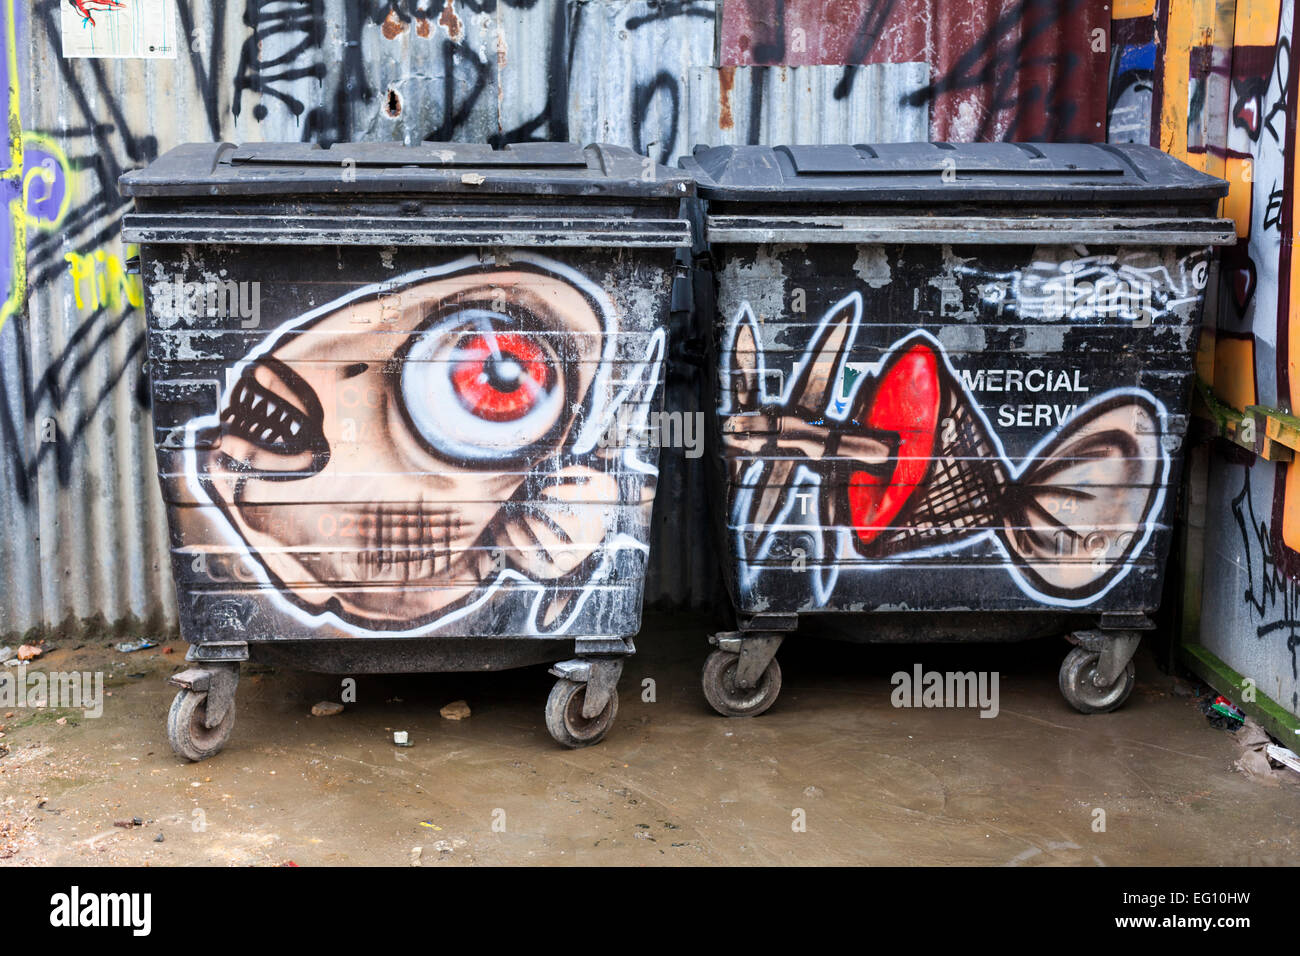 Street art Graffiti sur poubelles près de Brick Lane dans l'Est de Londres Banque D'Images